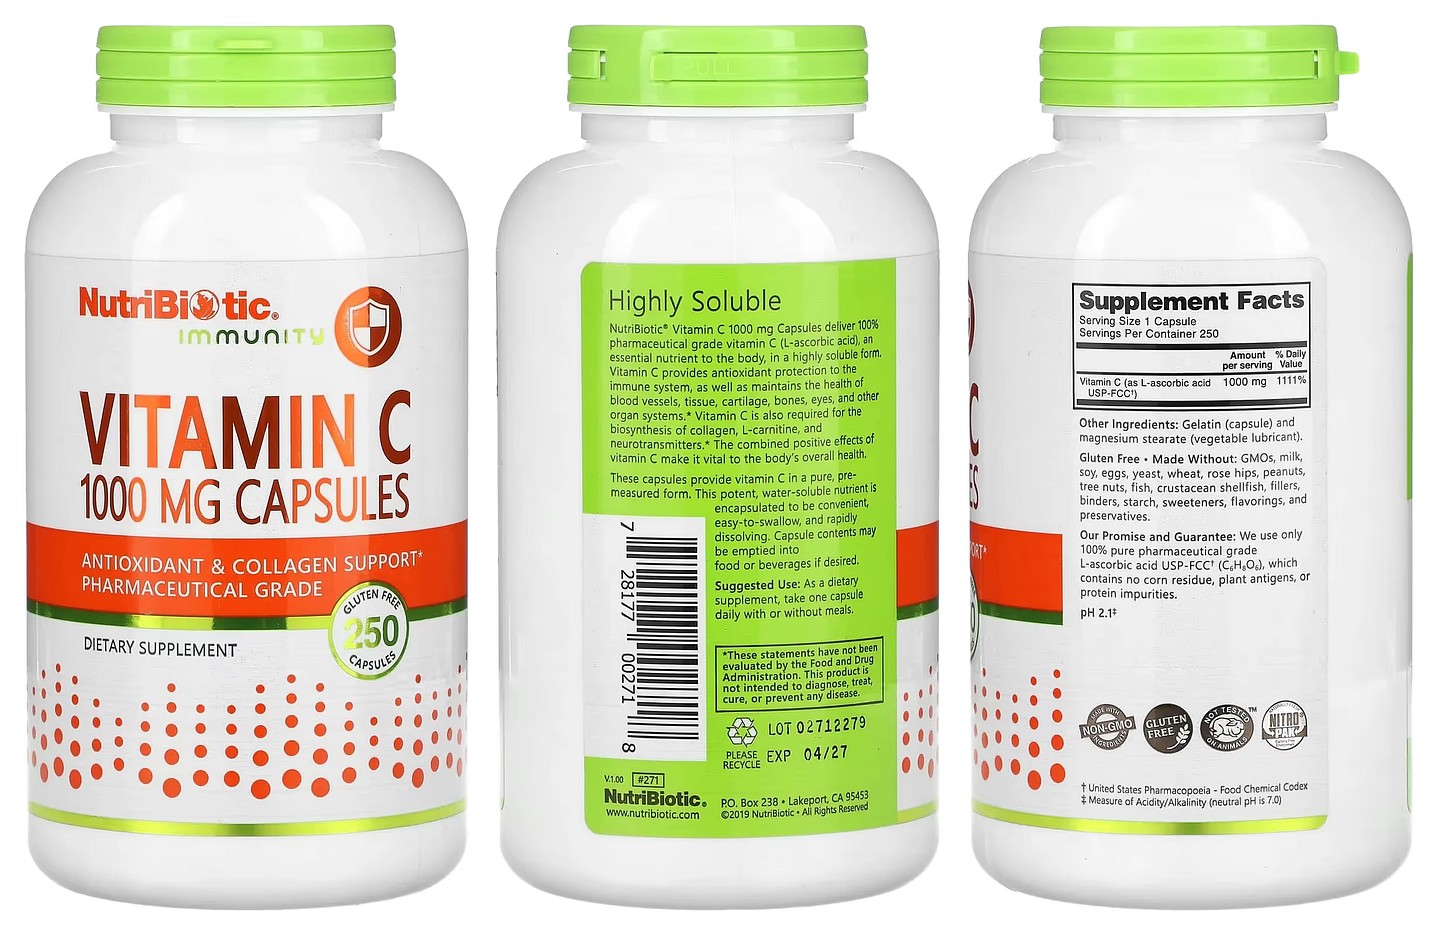 NutriBiotic, Immunity packaging